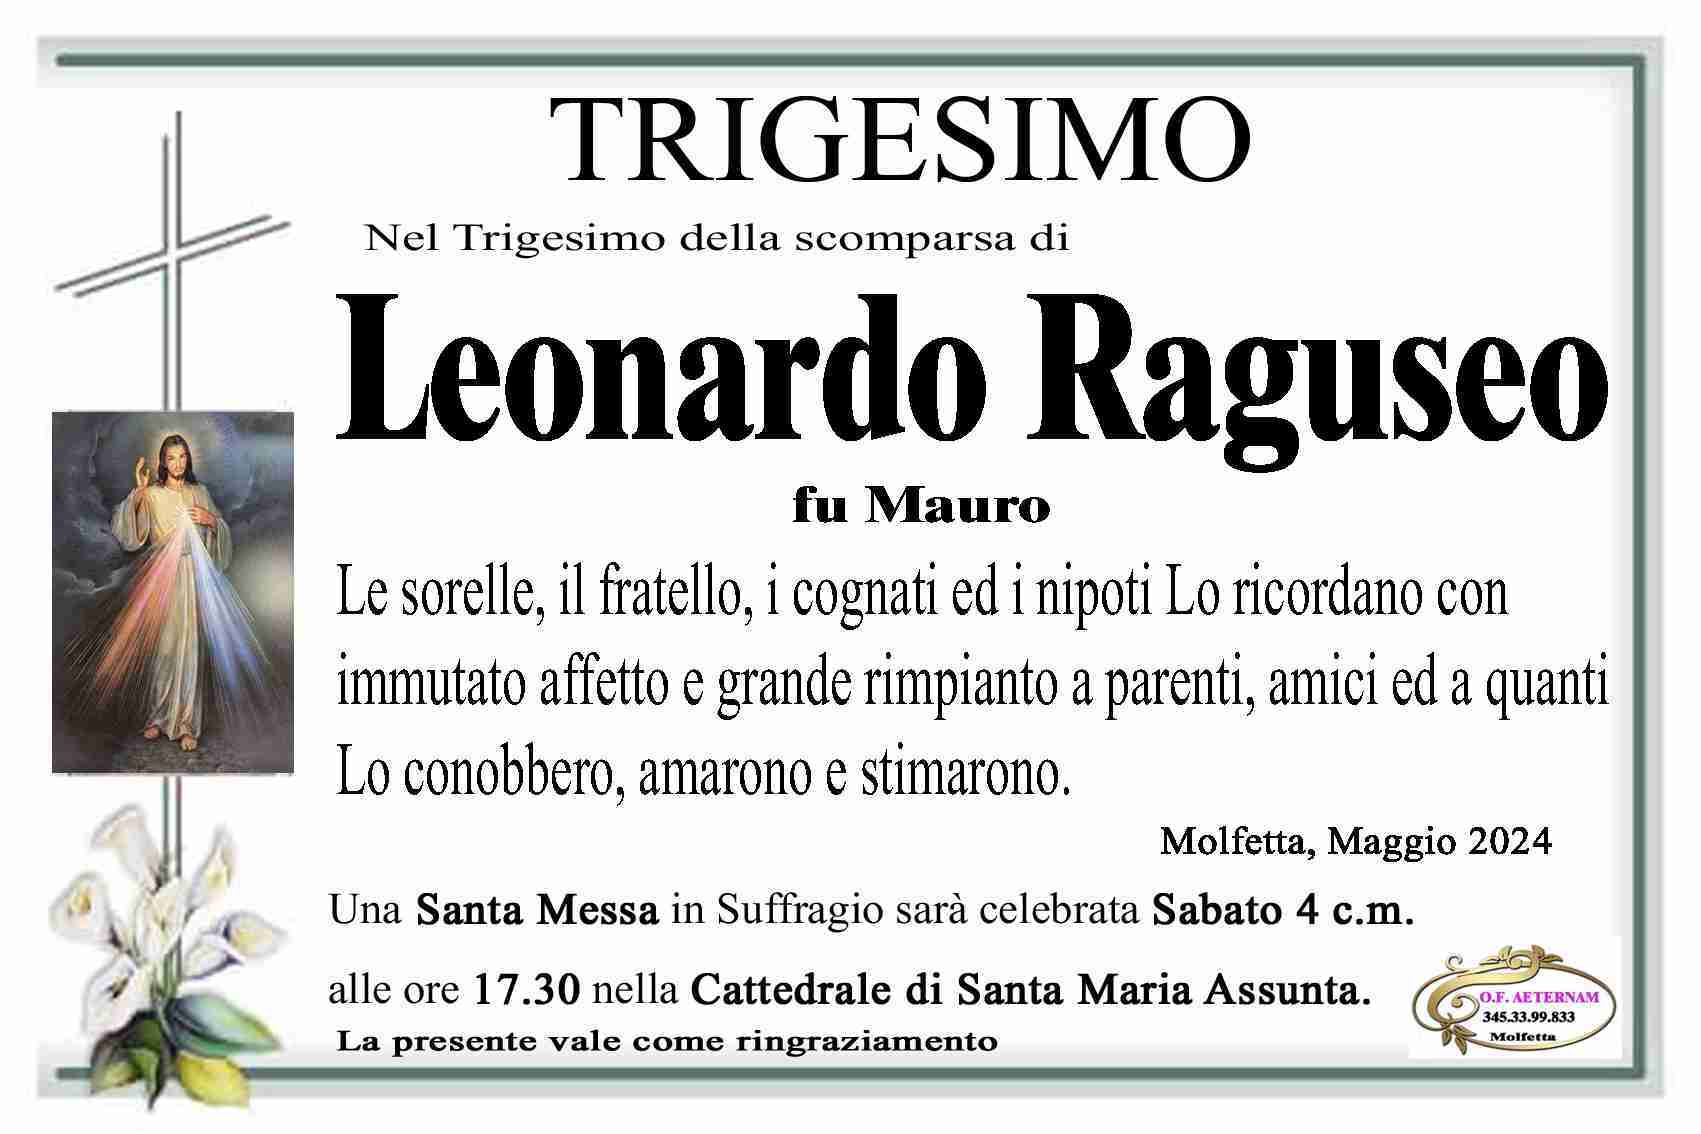 Leonardo Raguseo